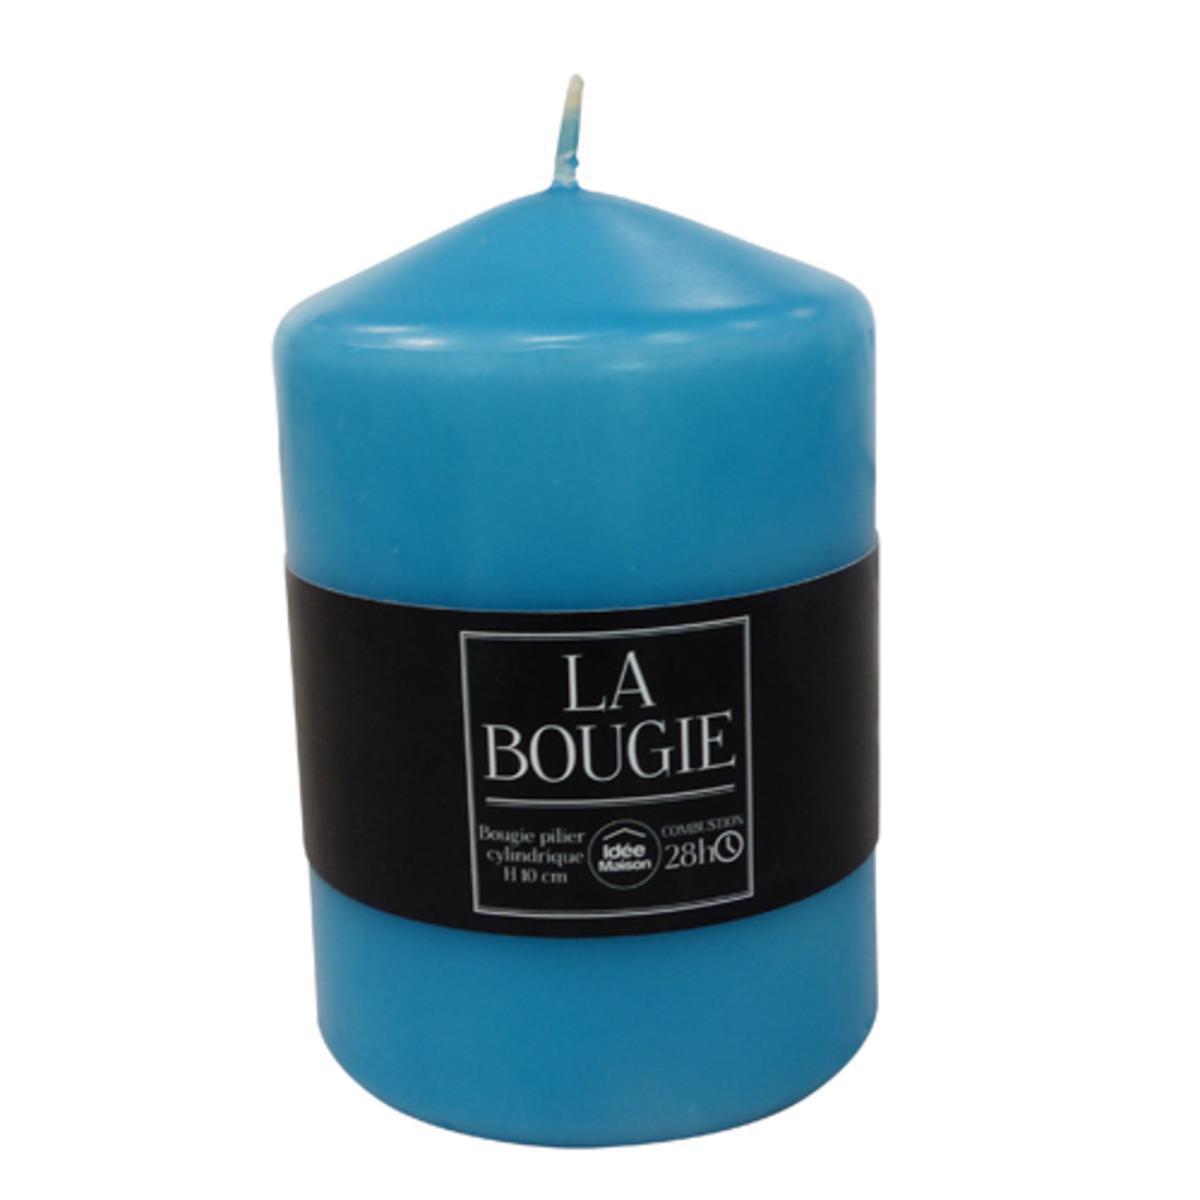 Bougie pilier cylindrique en paraffine - Hauteur 10 cm - Bleu